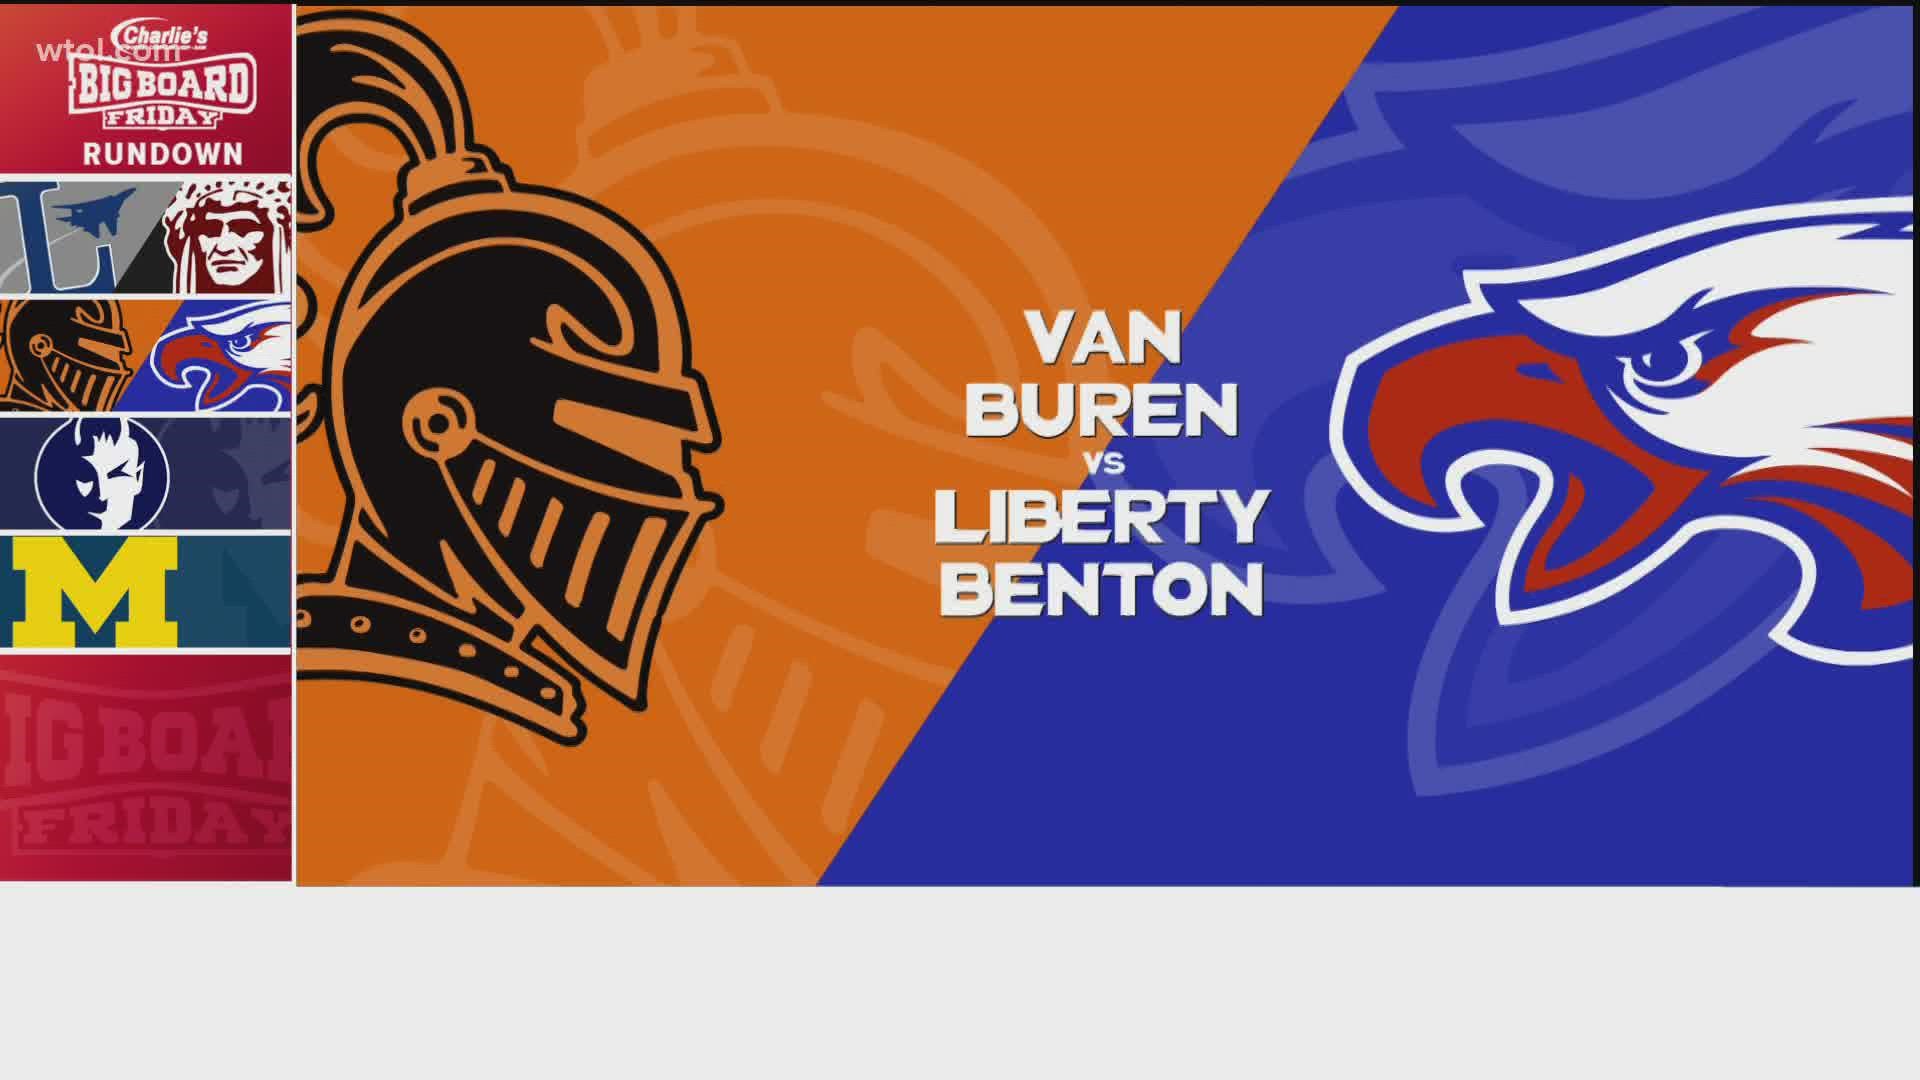 Moving to the Blanchard Valley Conference now, we've got Van Buren welcoming in Liberty-Benton.